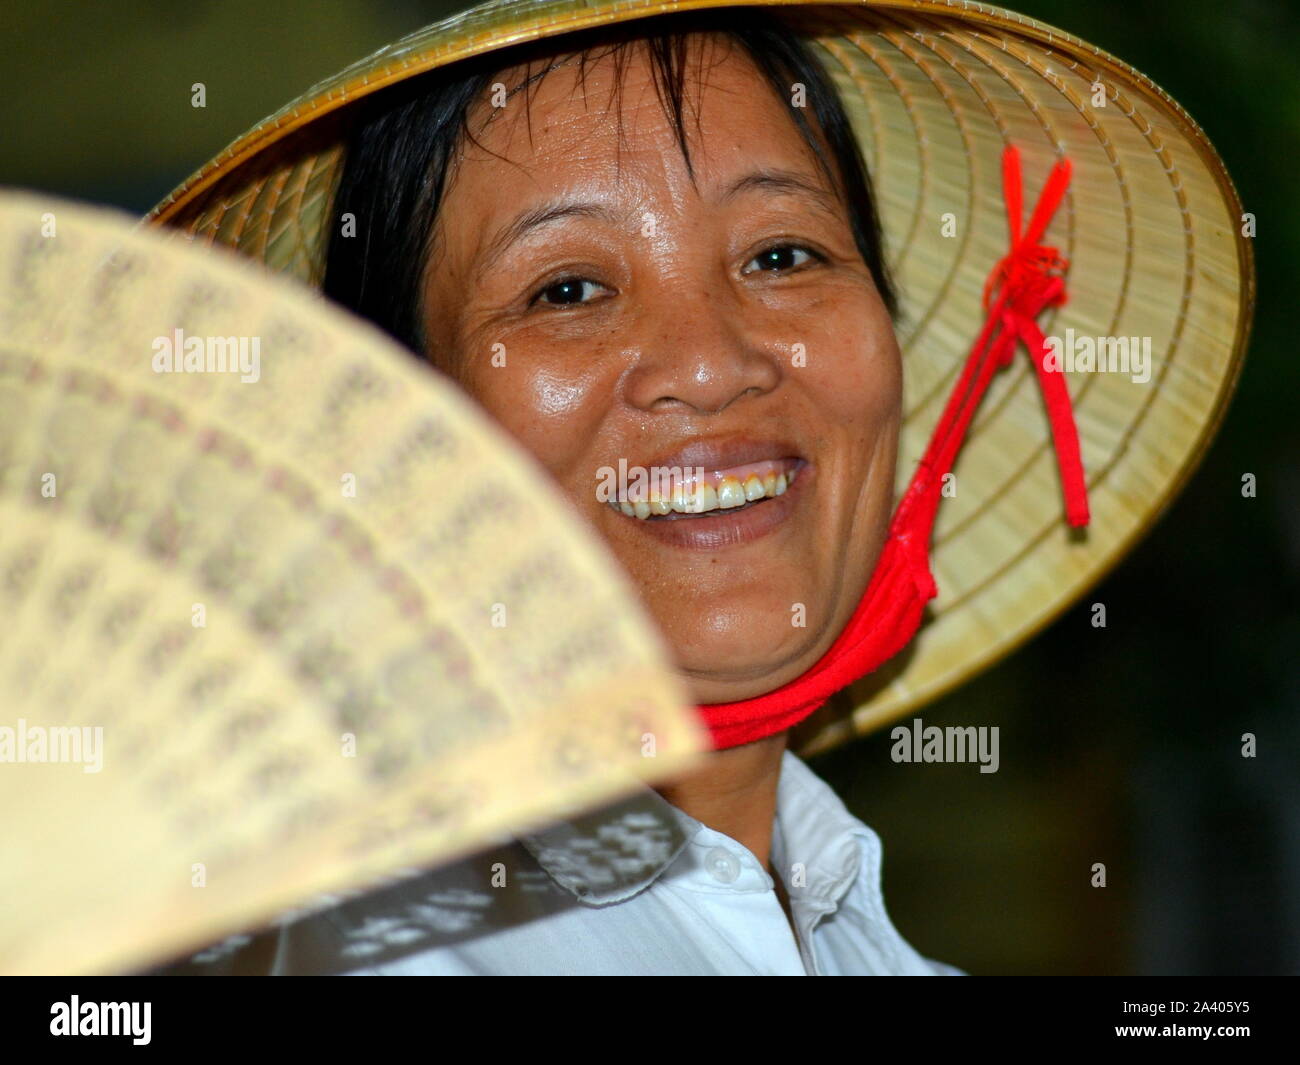 La sudation vietnamienne porte un chapeau de paille conique asiatiques (nón lá) avec du tissu rouge jugulaire et sourit pour la photo. Banque D'Images